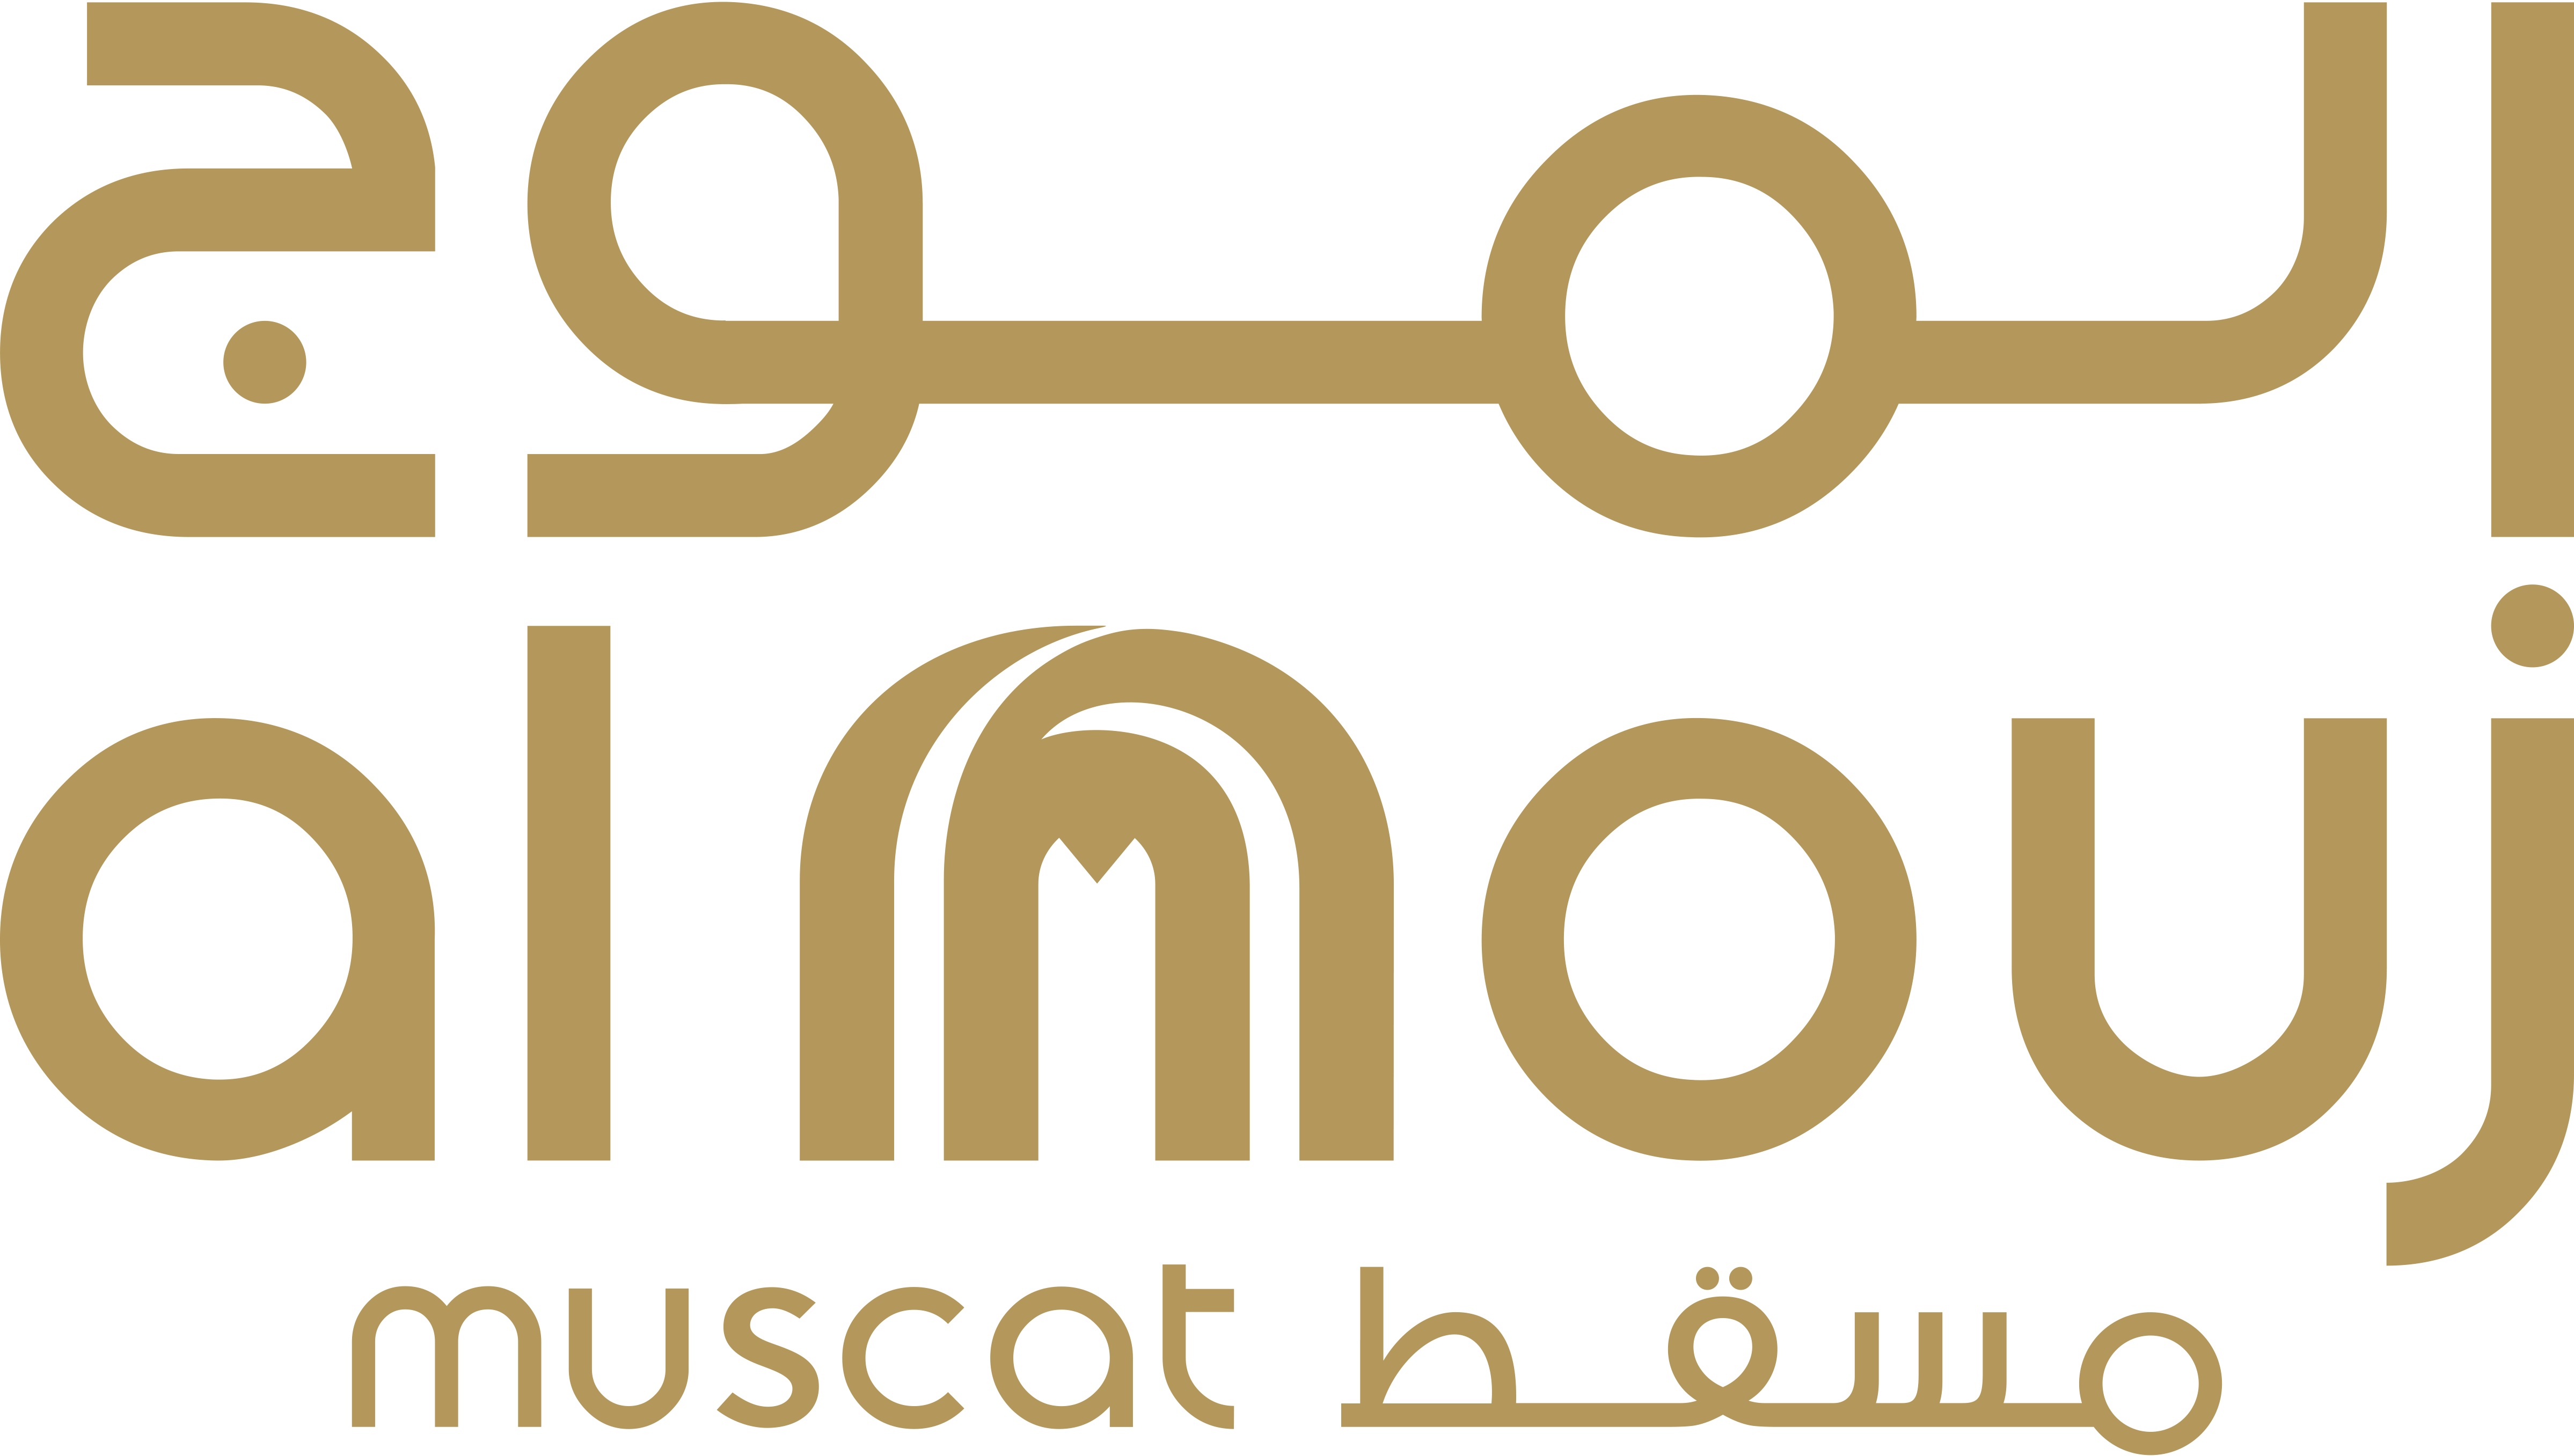 Al Mouj Muscat